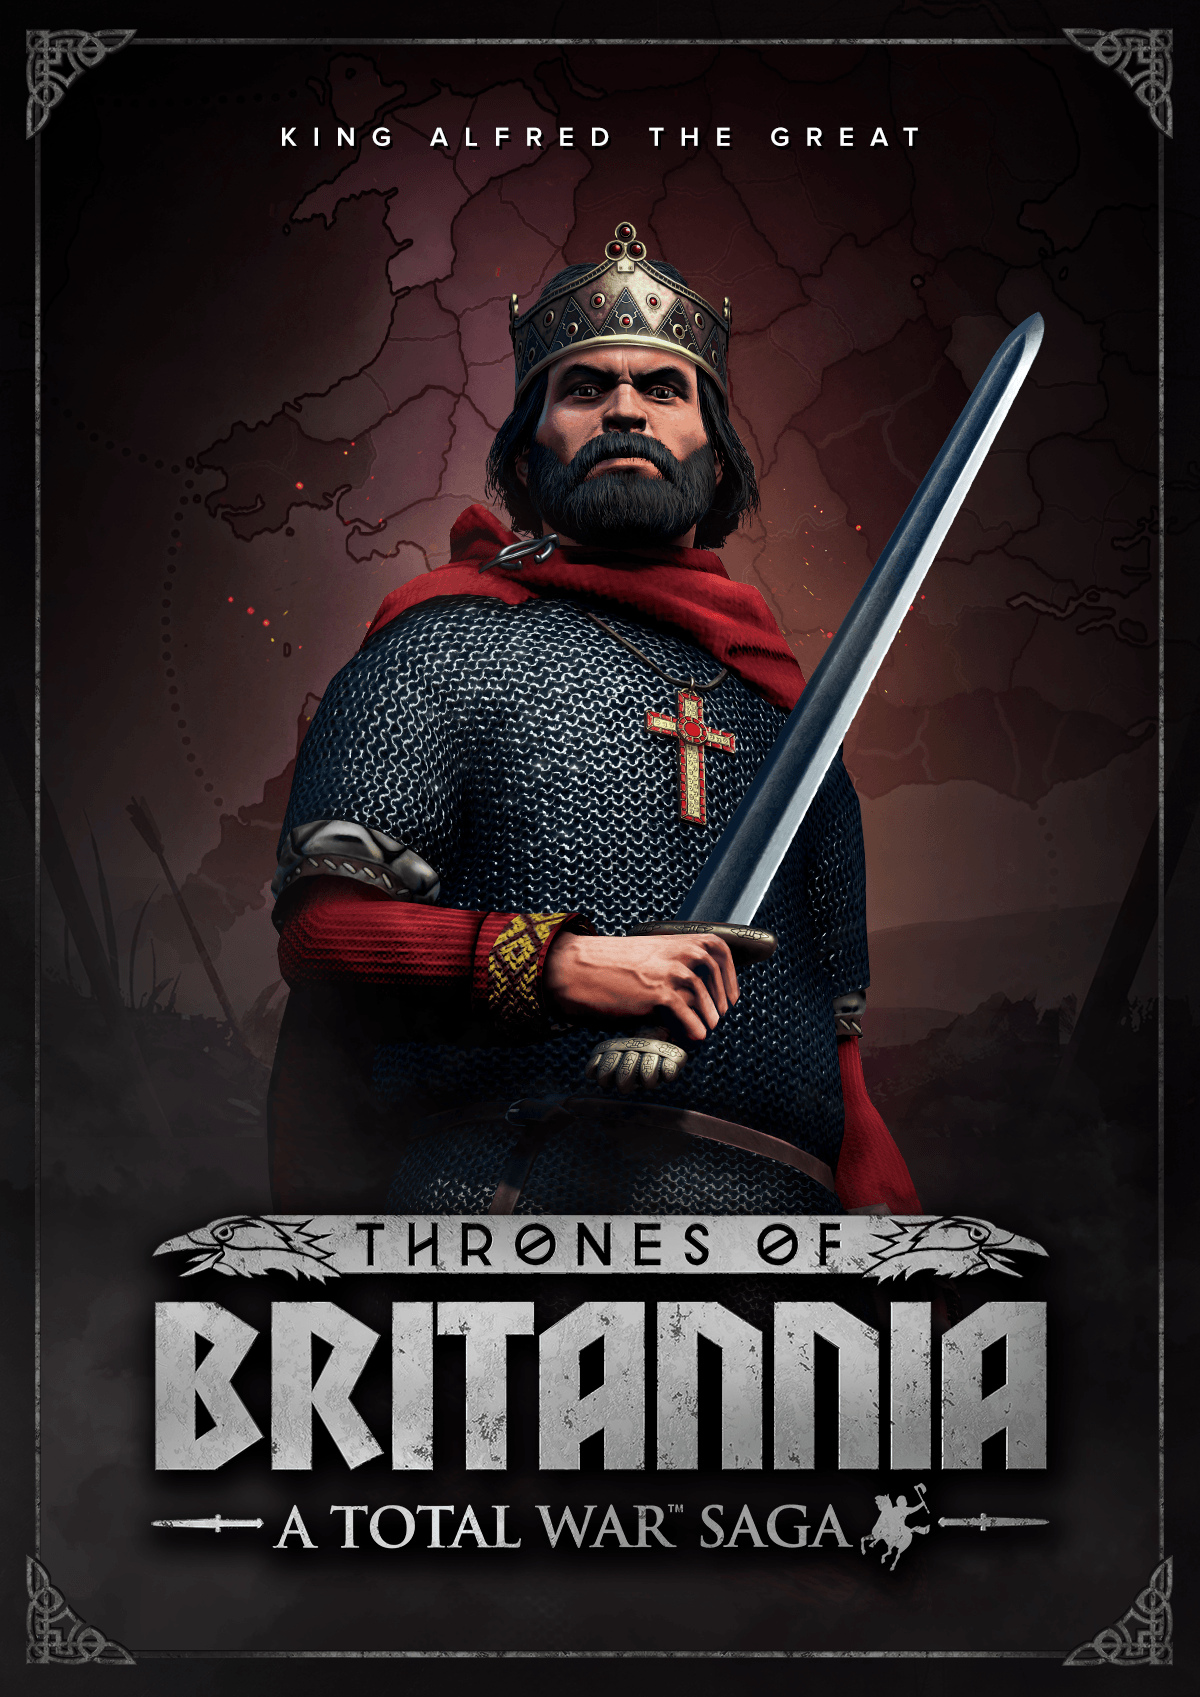 total war saga thrones of britannia multiplayer